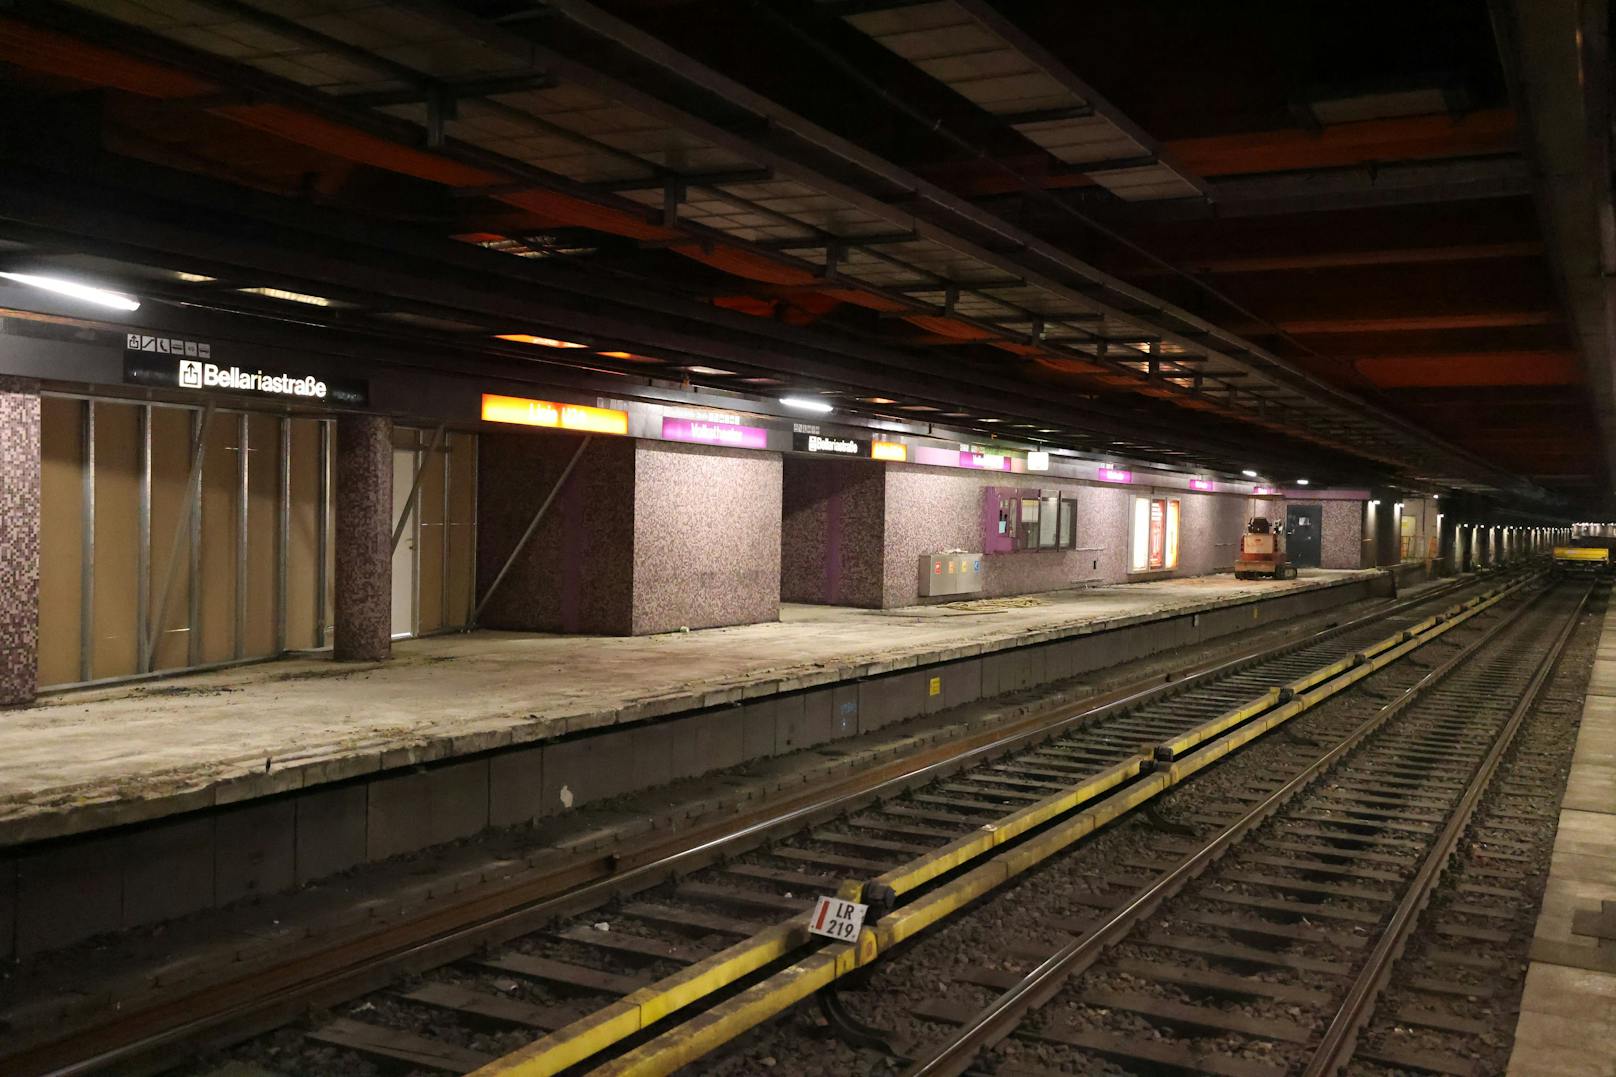 Unter der Zweierlinie wird derzeit fleißig an Wiens Öffi-Zukunft gebaut. Seit Ende Mai ist die U2 zwischen den Stationen Schottentor und Karlsplatz gesperrt. Auch die Stationen haben sich bereits stark verändert.